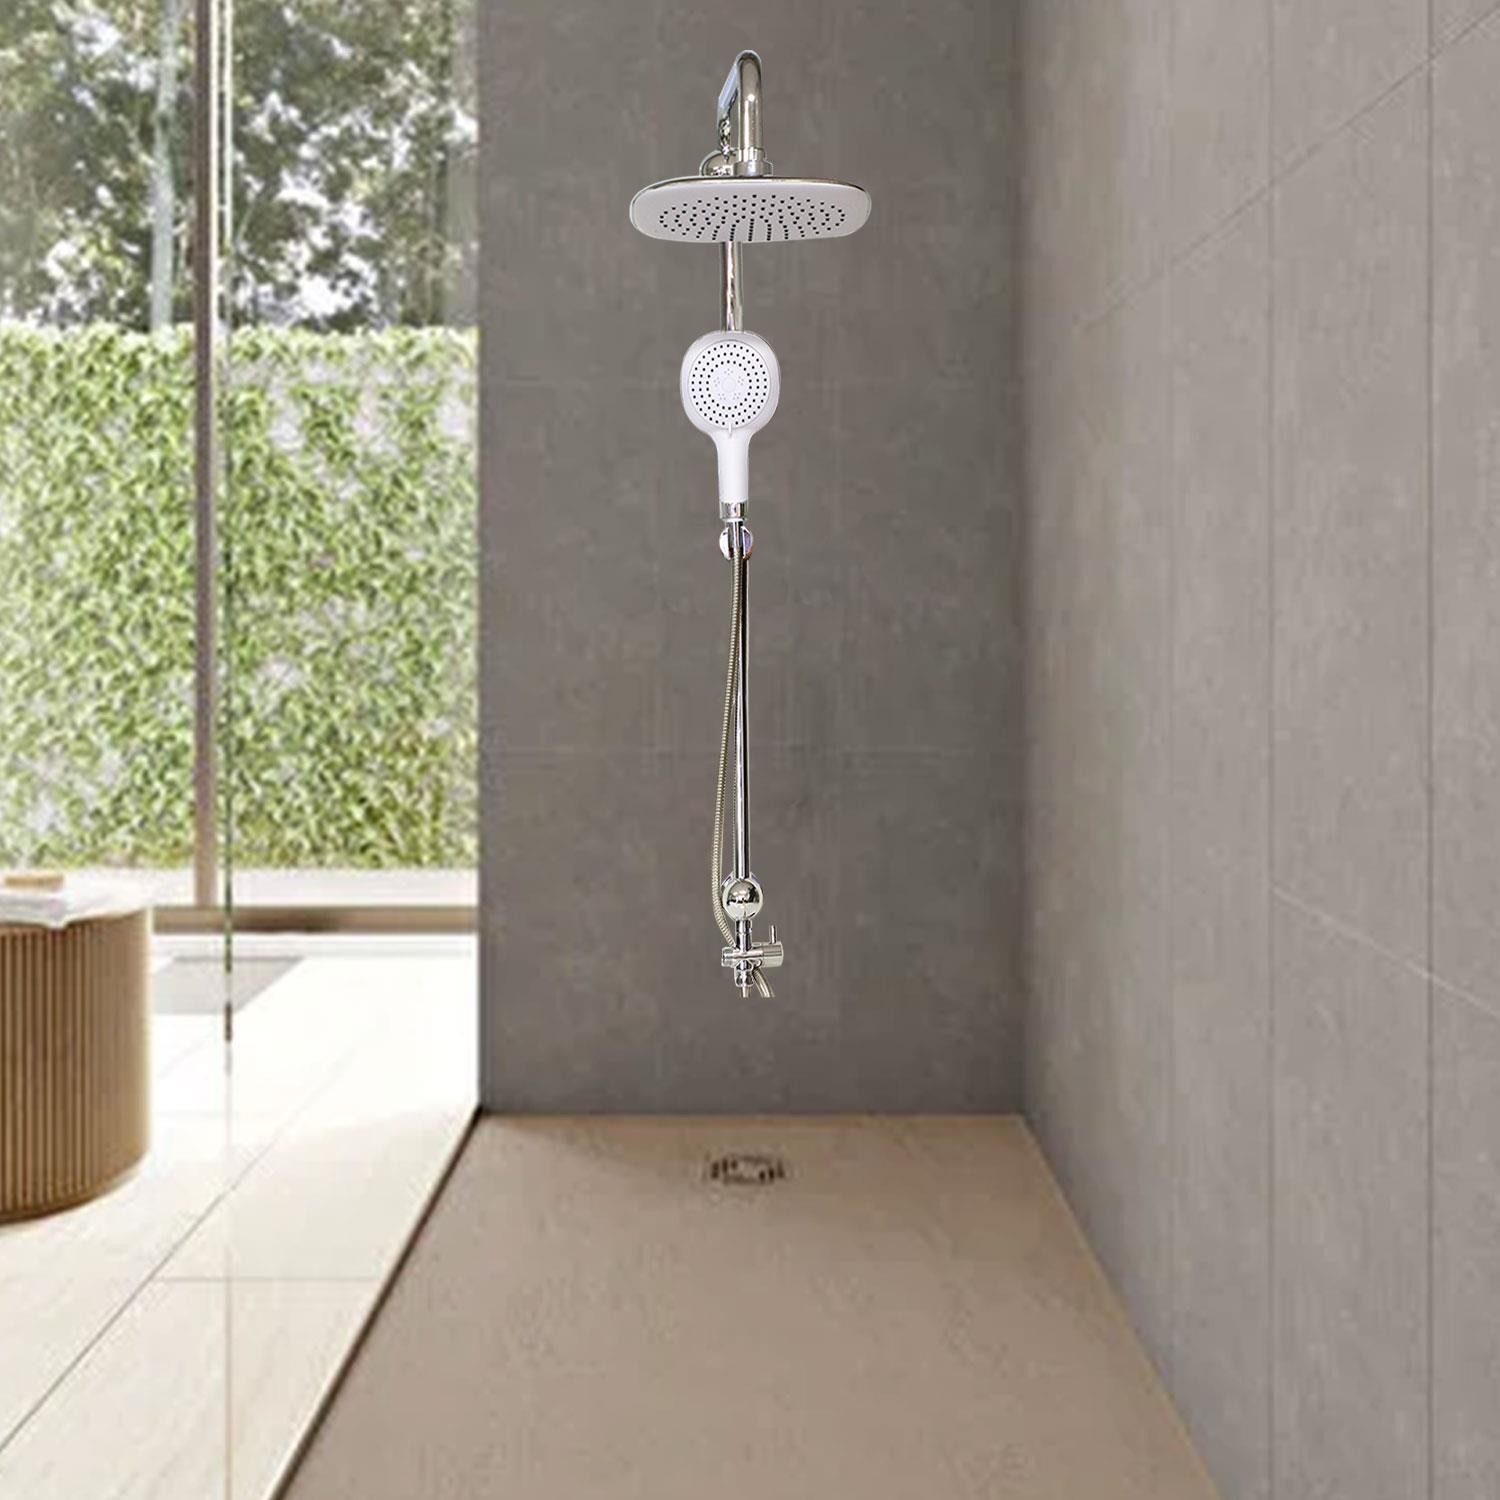 Robot Tepe Duş Seti Takımı Shower Yağmurlama Kare Banyo Masaj Duş Başlığı Sistemi Beyaz Krom